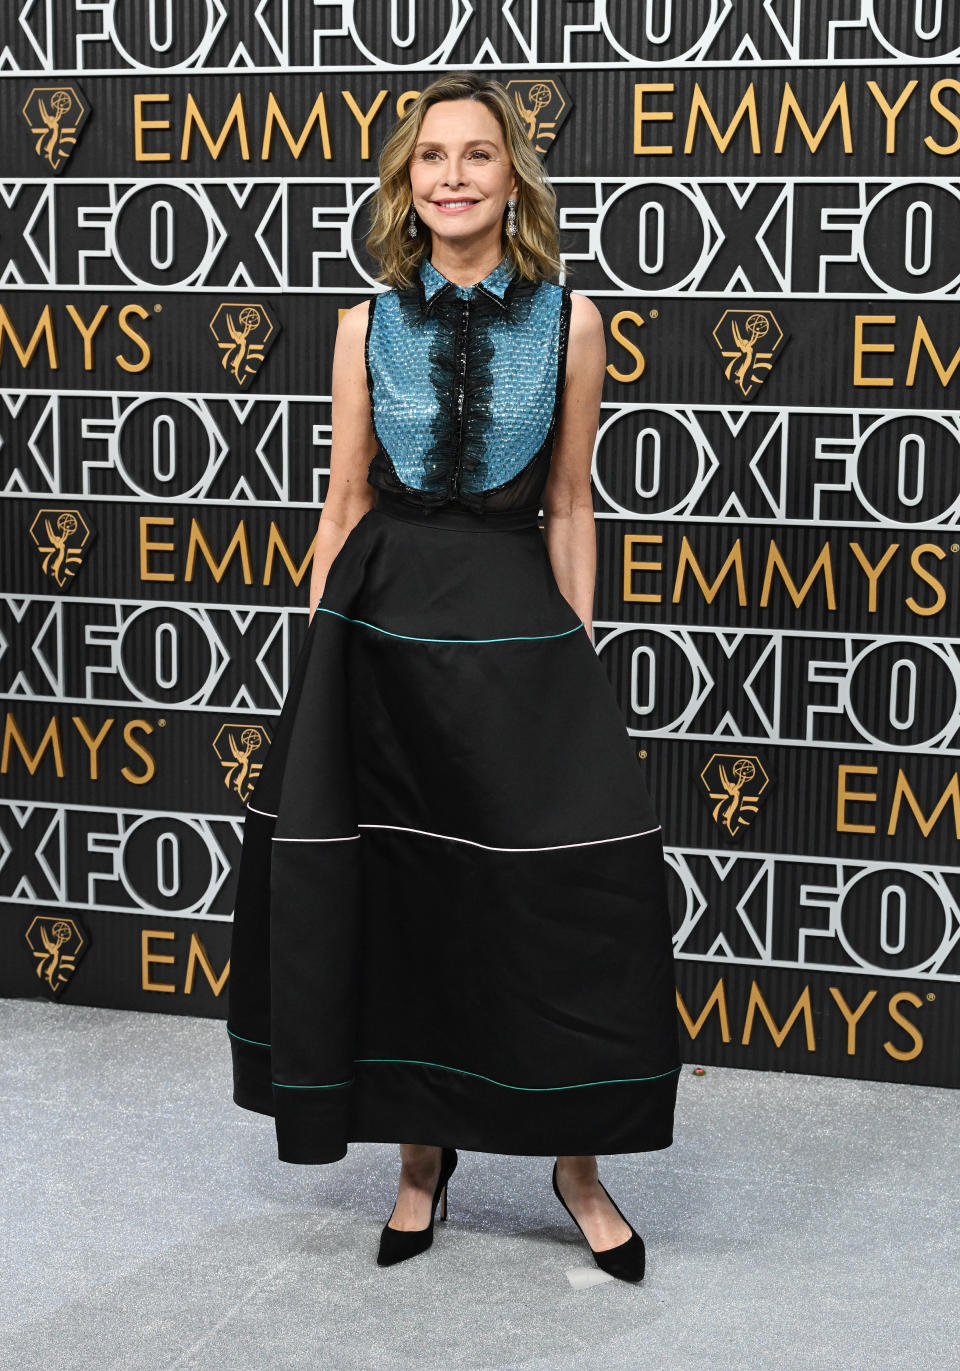 Callista Flockhart, Emmy Awards, red carpet, Giorgio Armani, black dress 